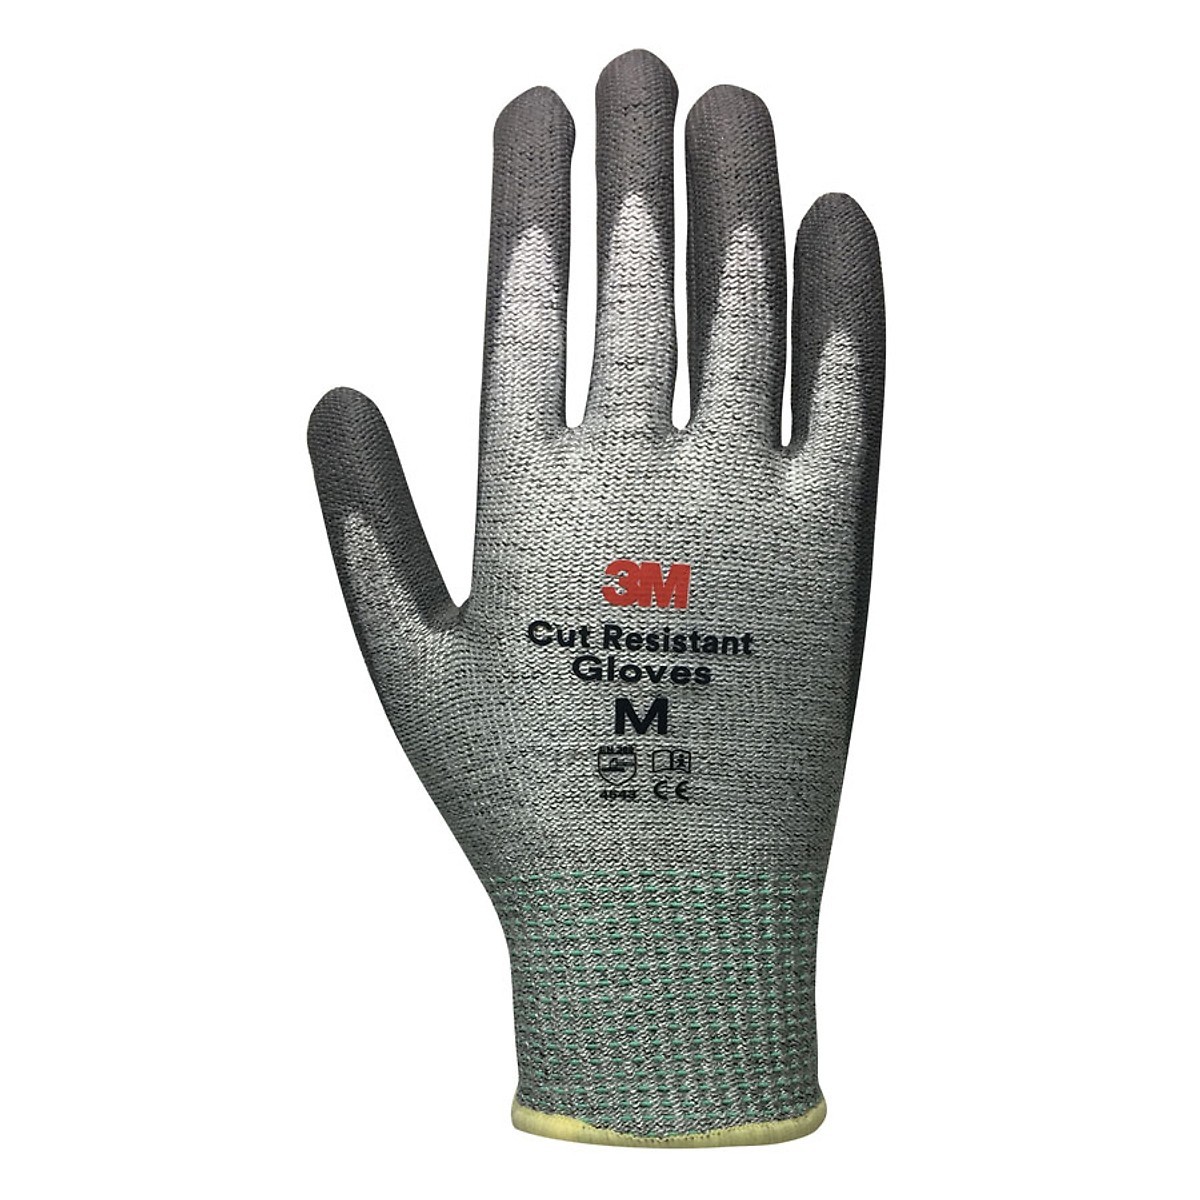 3M Cut Resistant Gloves (ATG-3M-LV5-L)